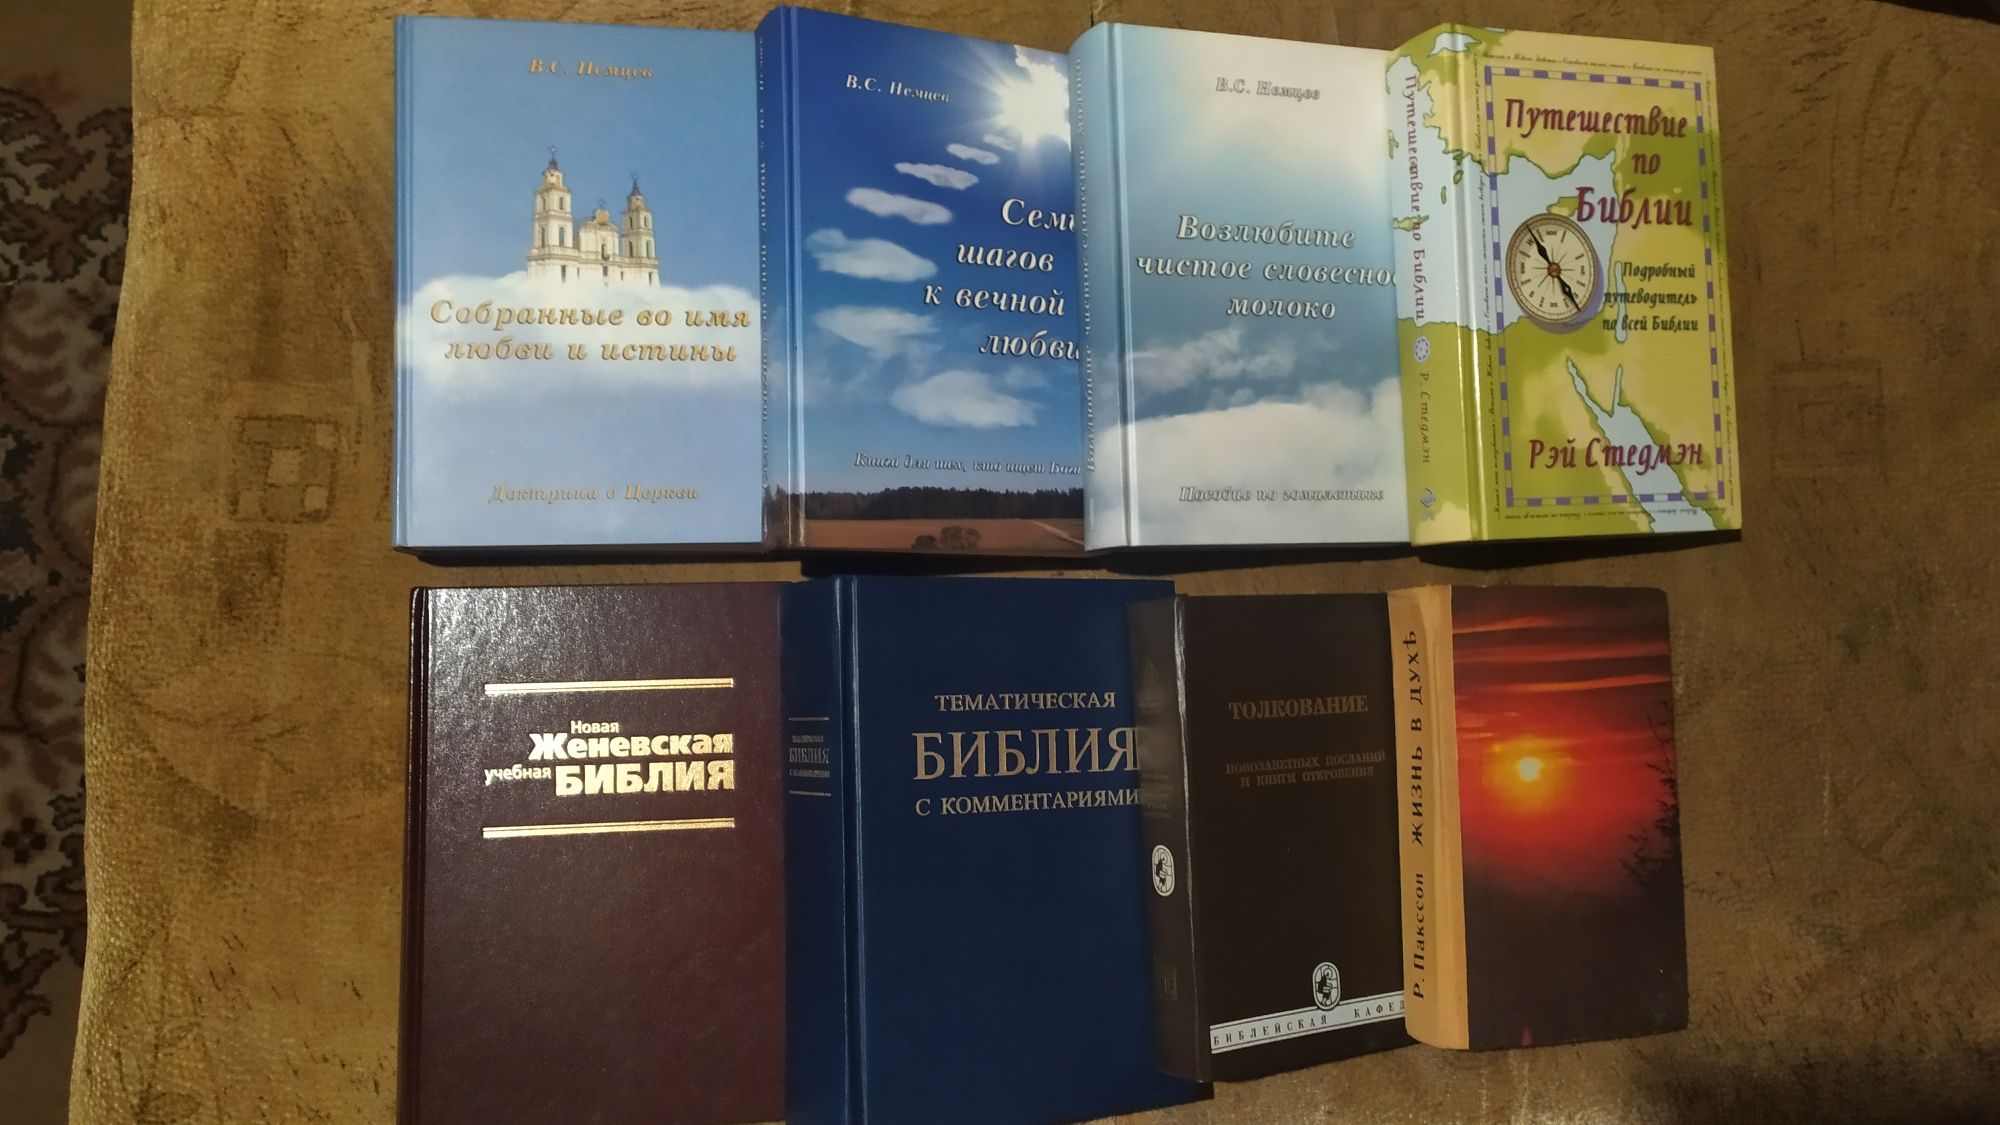 Христианские книги разных направлений, ответы на духовные вопросы,и др